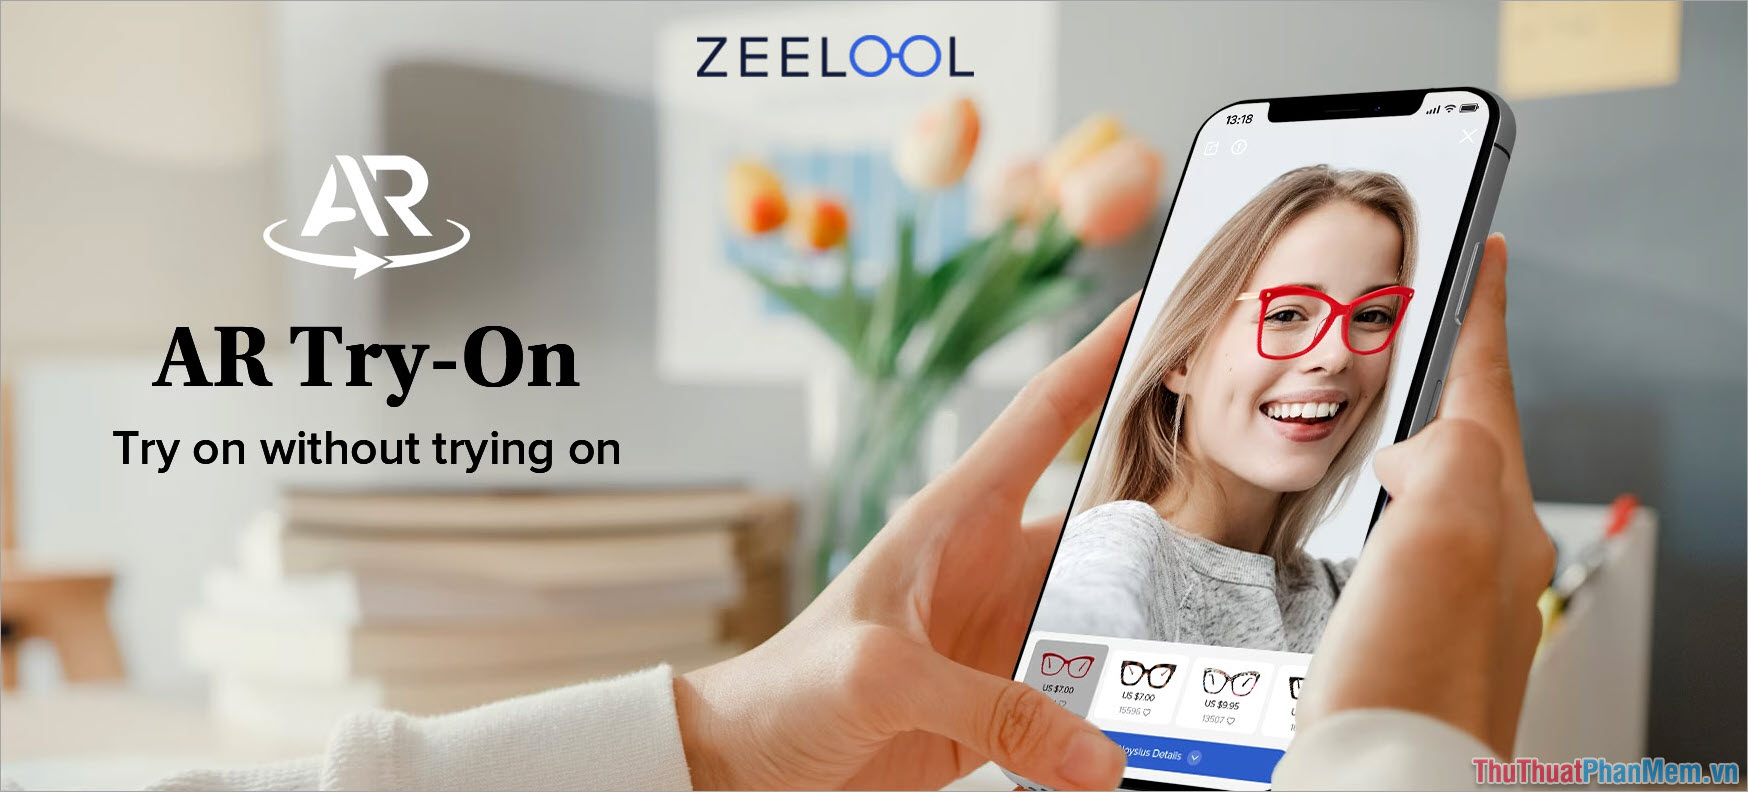 Zeelool – App chọn kính phù hợp với khuôn mặt